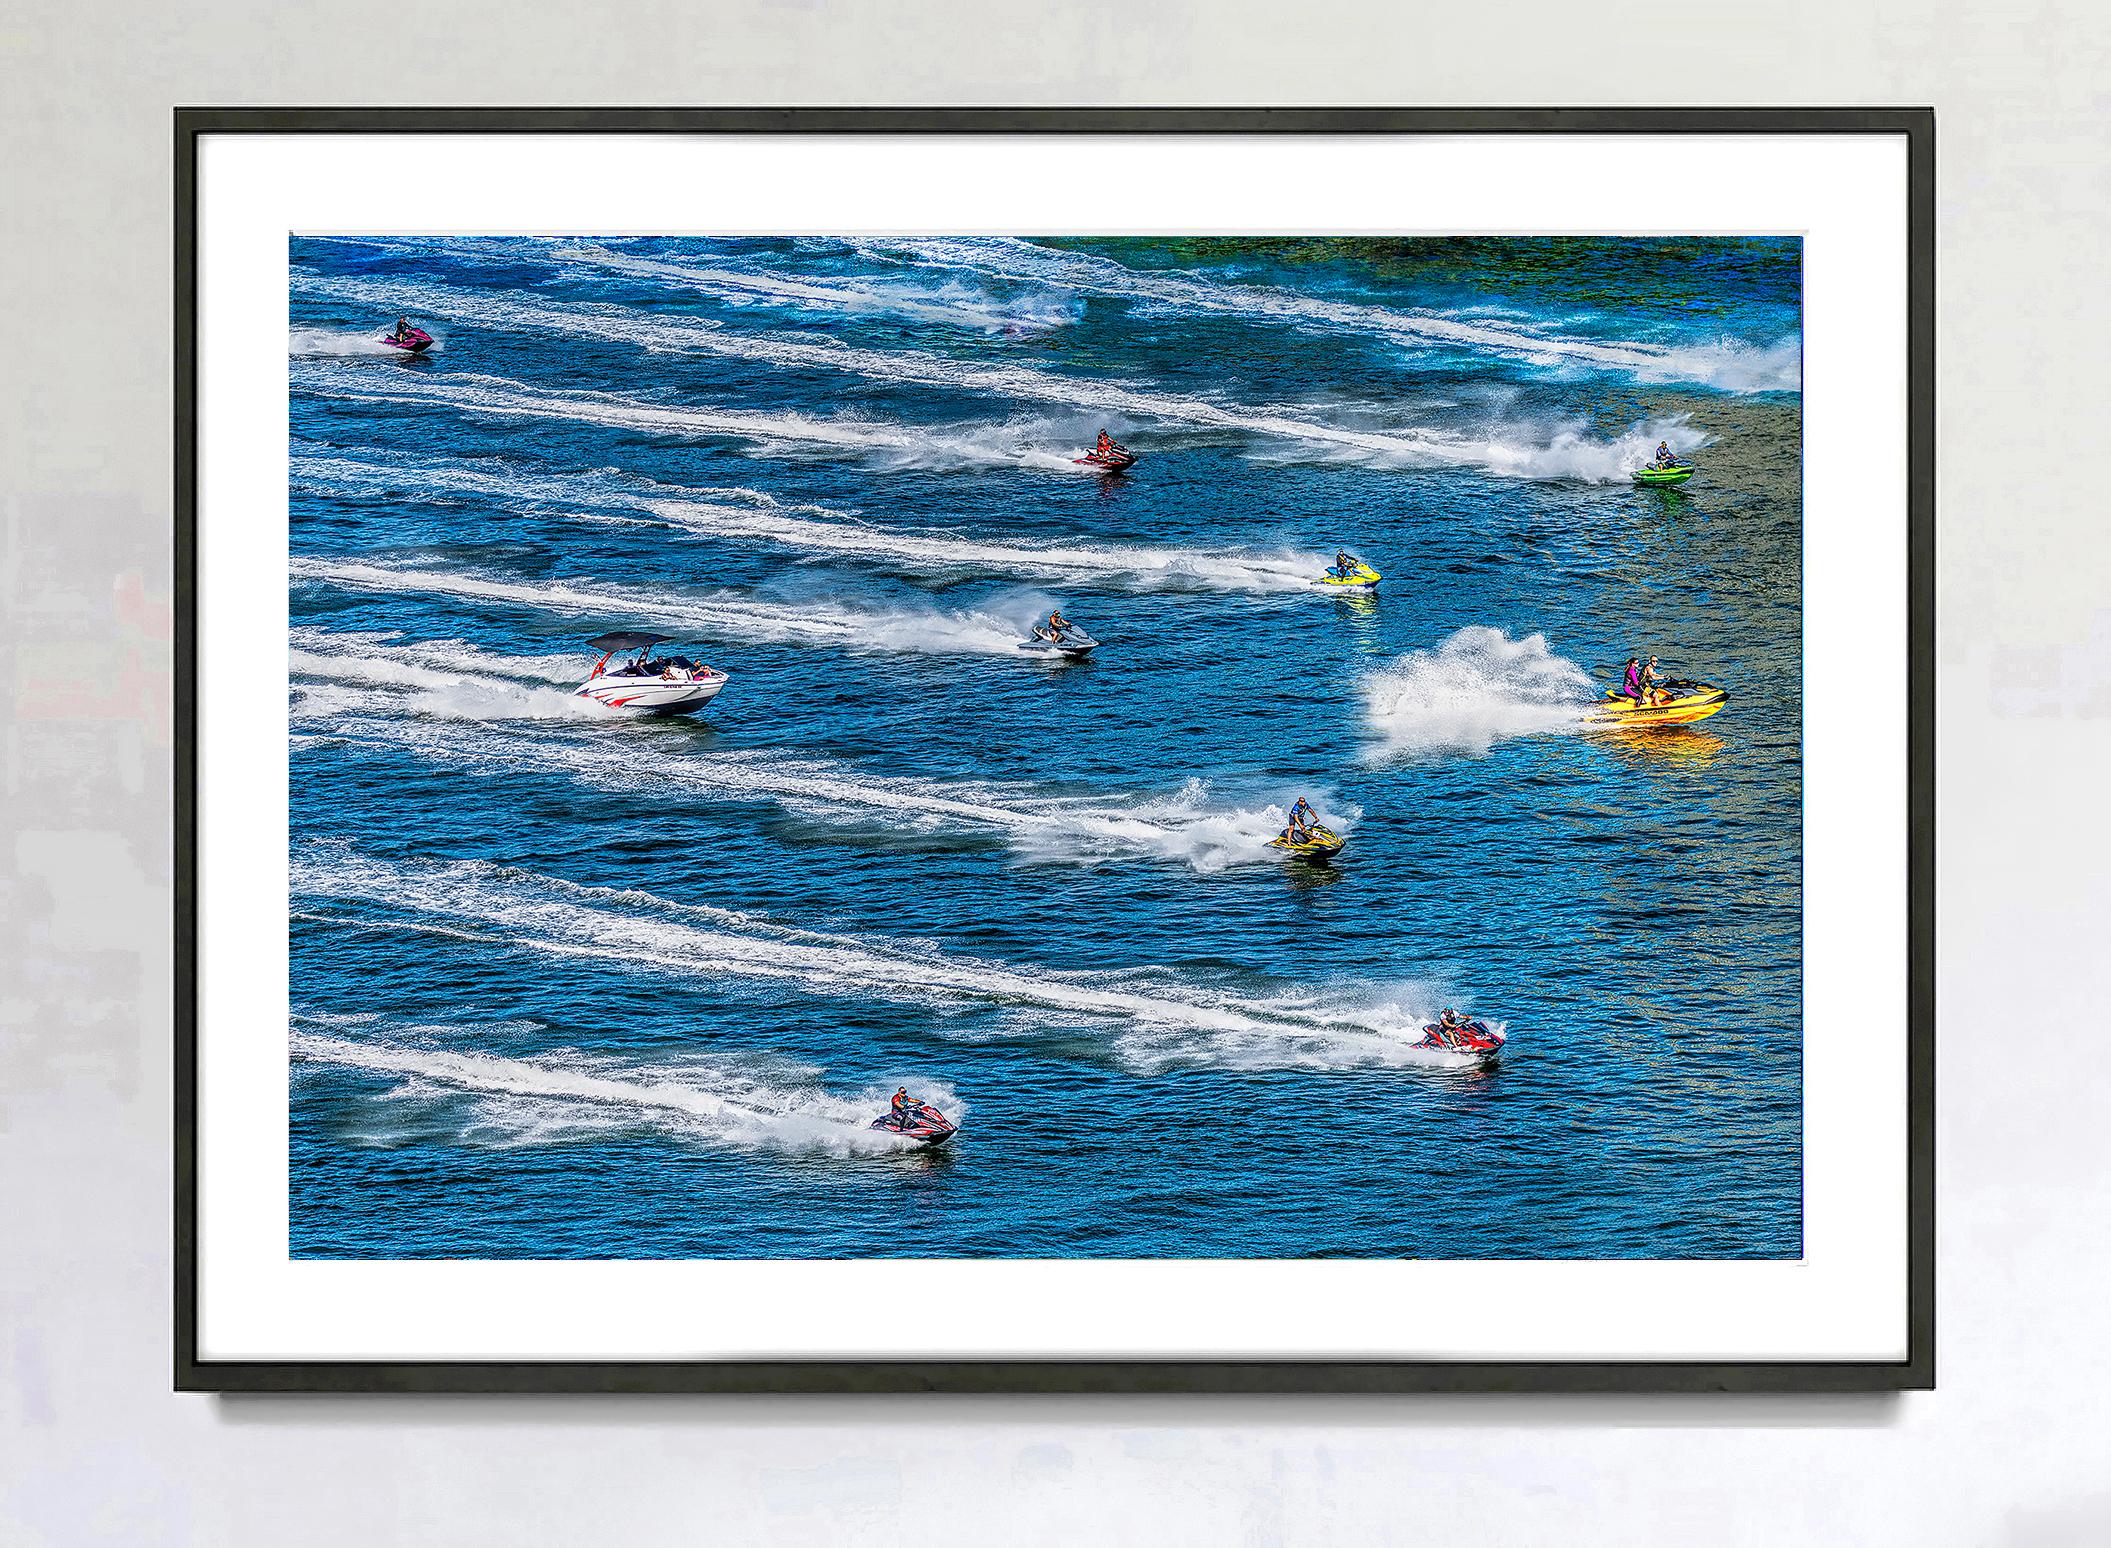 Jet Ski-Wassersport-Actionswellenrennen in blauem Wasser – Photograph von Mitchell Funk